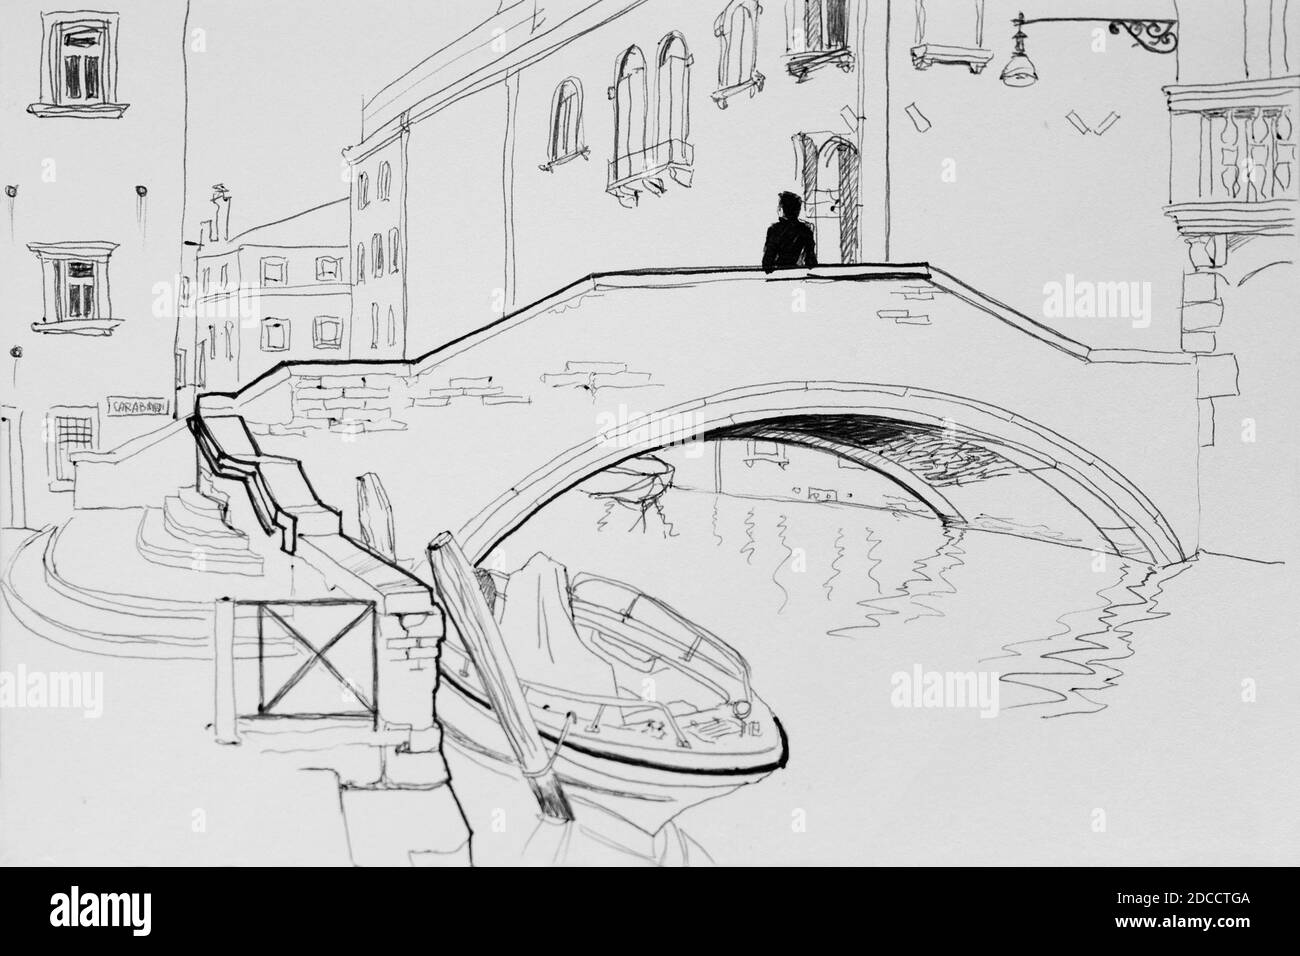 Einsamer Mann in Venedig Brücke architektonischen Stift Skizze Illustration Stockfoto